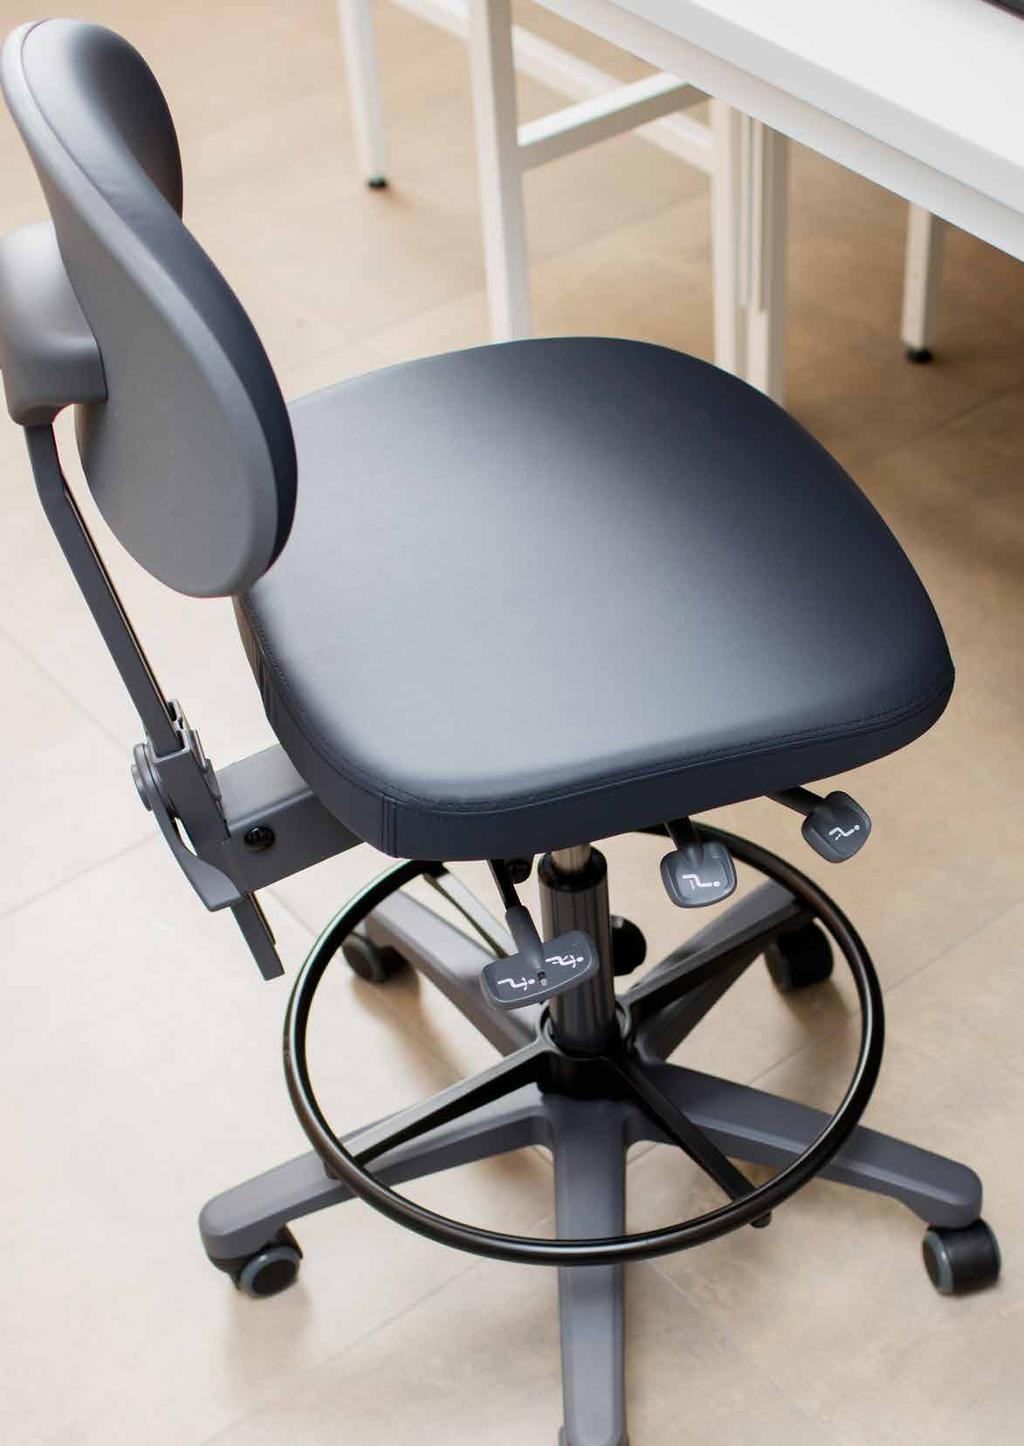 RH ACTIV 300 RH Activ 300 är en individuellt anpassningsbar stol som är specialdesignad för att passa i krävande miljöer såsom industri, laboratorier och kassadiskar.